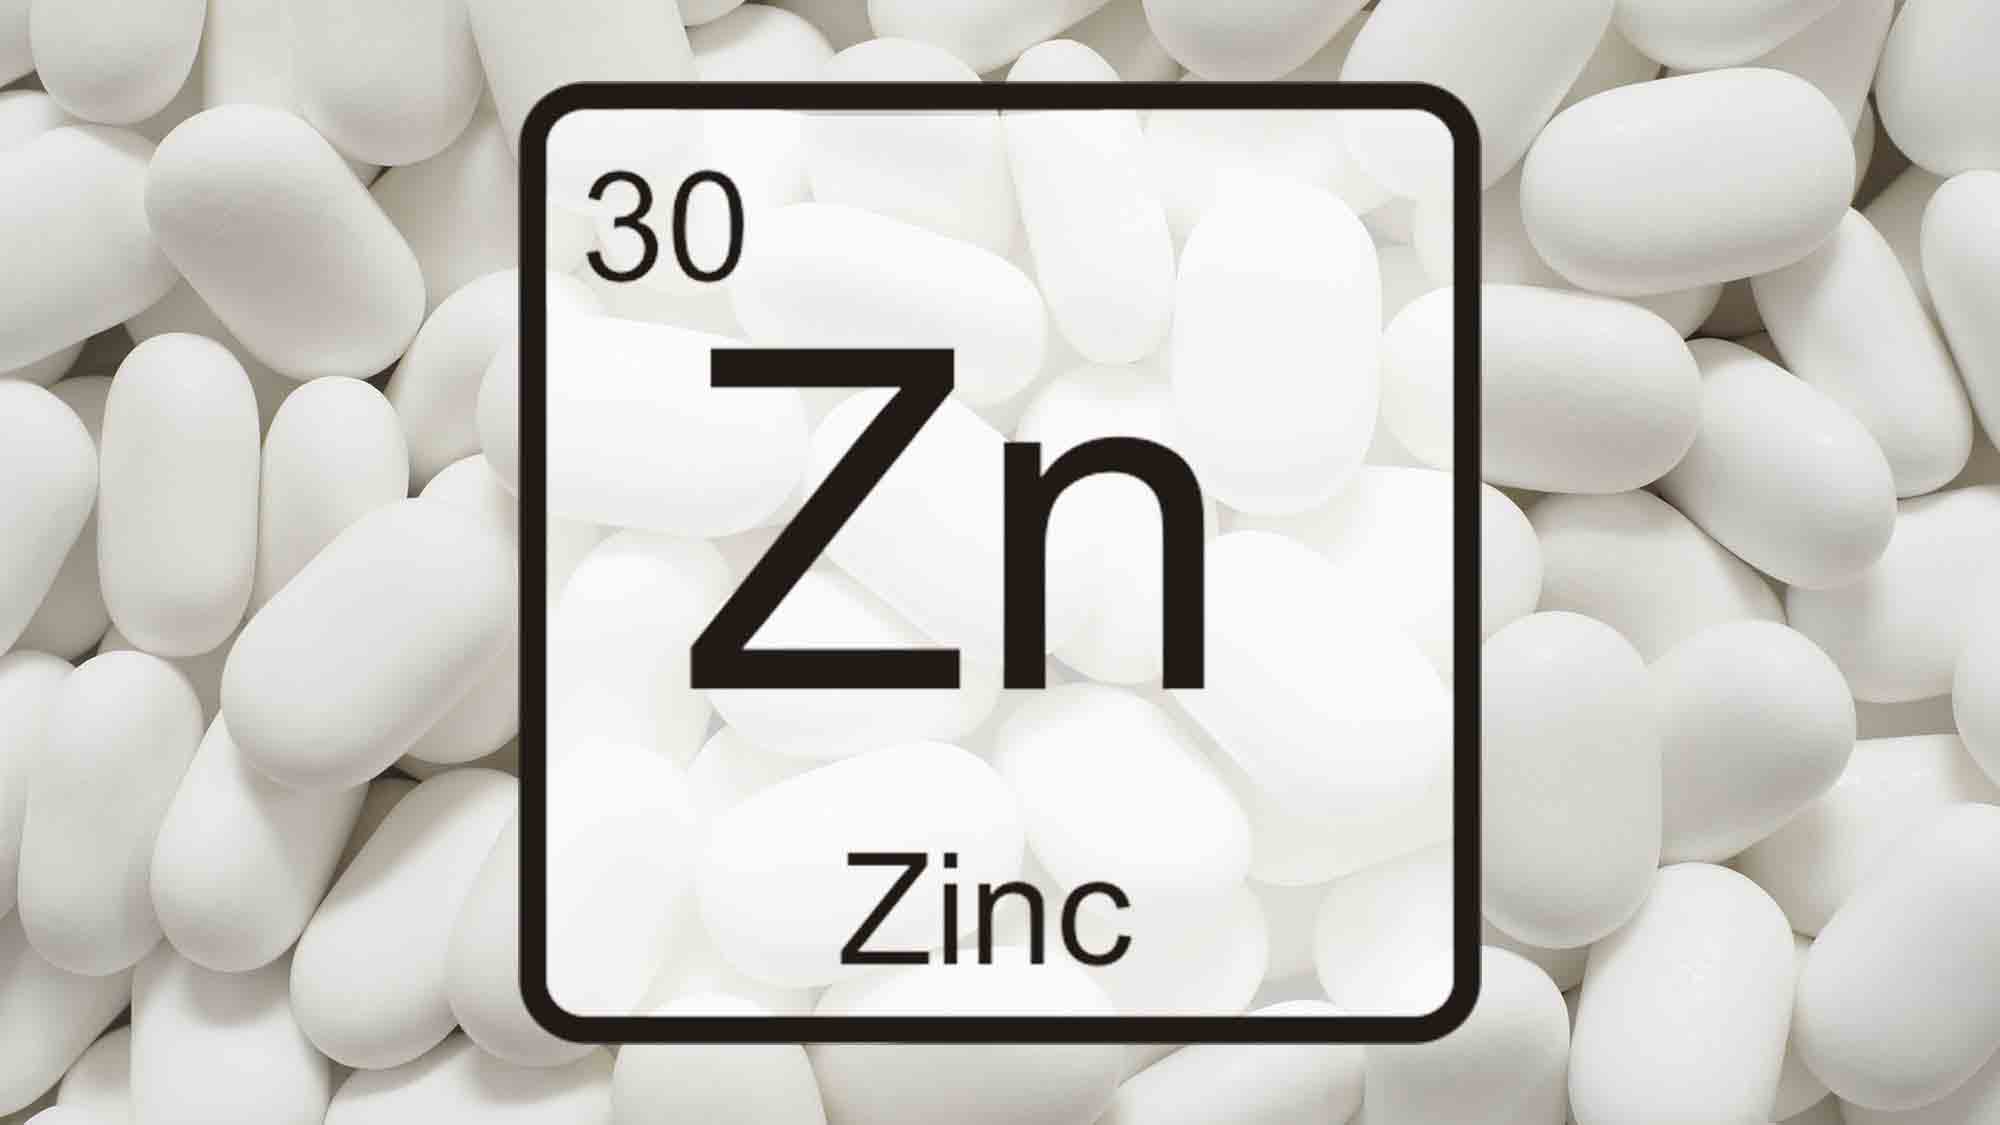 An Overview of Zinc